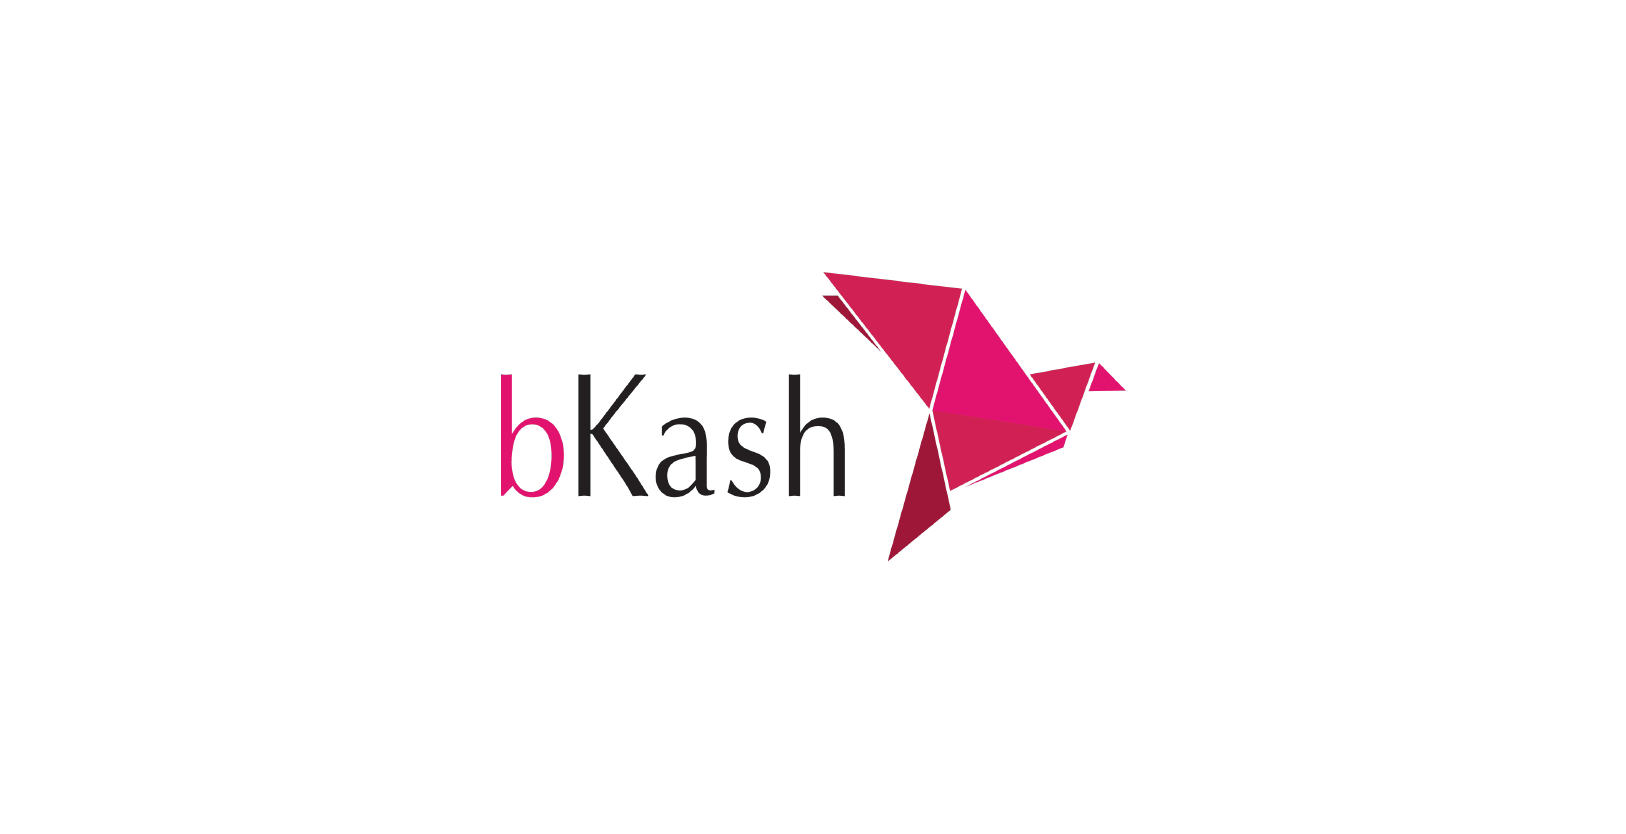 VisionFund Portfolio Company bKash's Logo